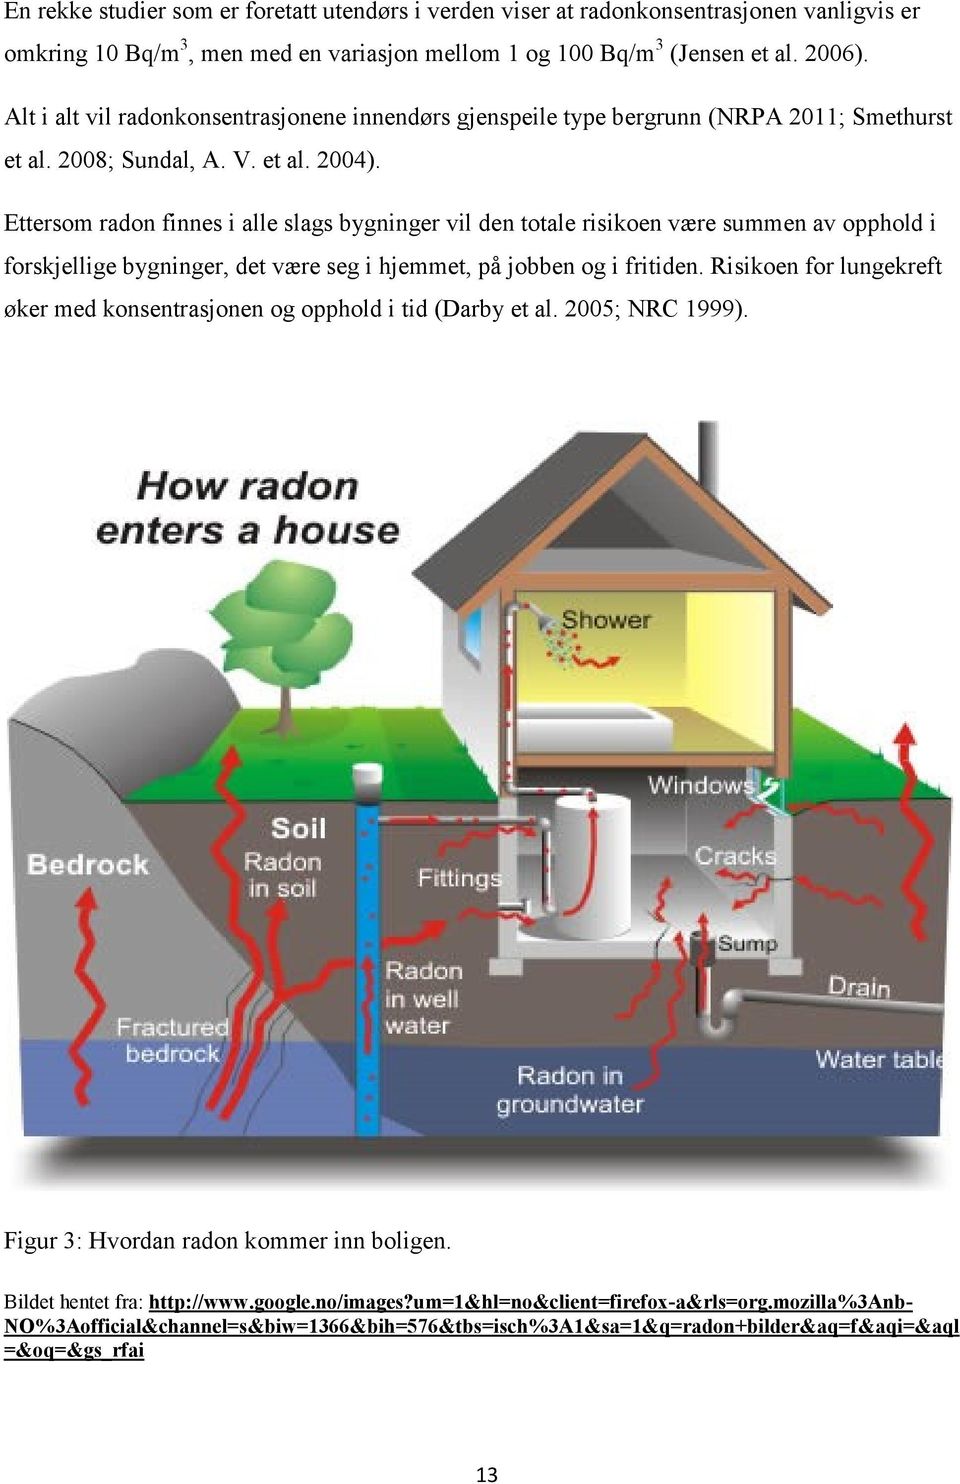 Ettersom radon finnes i alle slags bygninger vil den totale risikoen være summen av opphold i forskjellige bygninger, det være seg i hjemmet, på jobben og i fritiden.